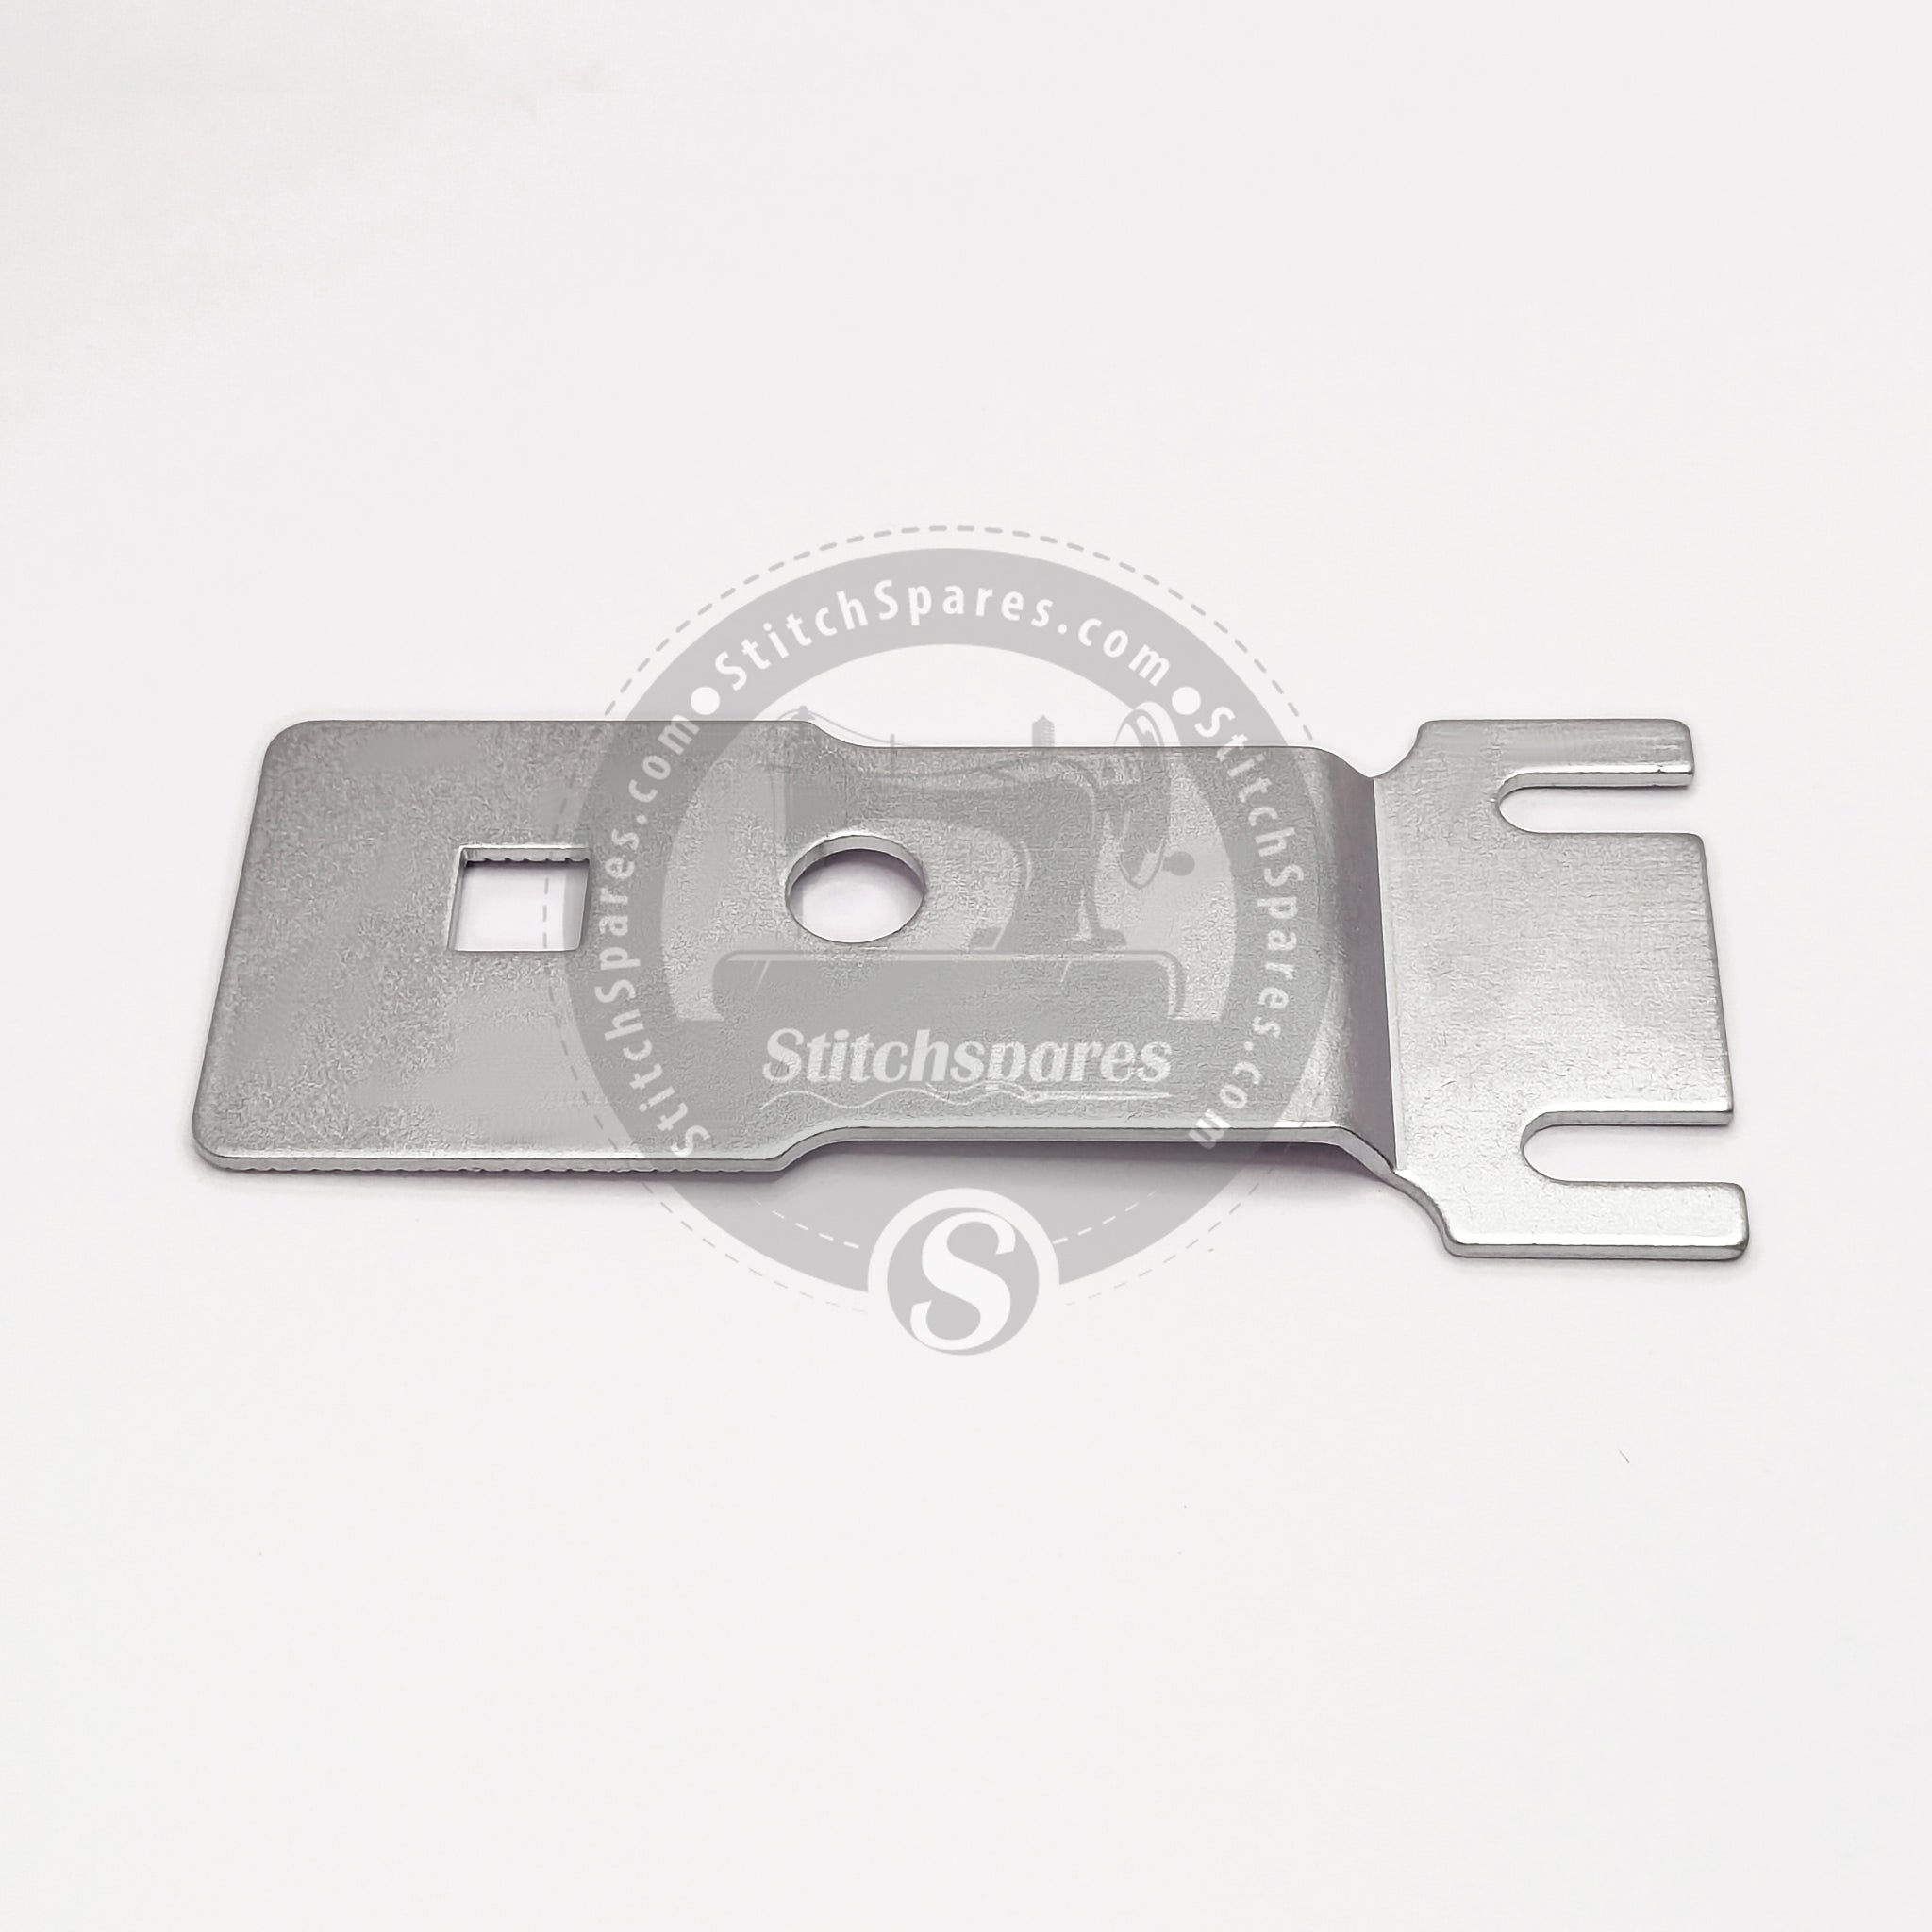 B2529-372-000 / B2529-372-C00 Placa de alimentación Botón pequeño para JUKI MB-372 Repuestos para máquina de coser botones